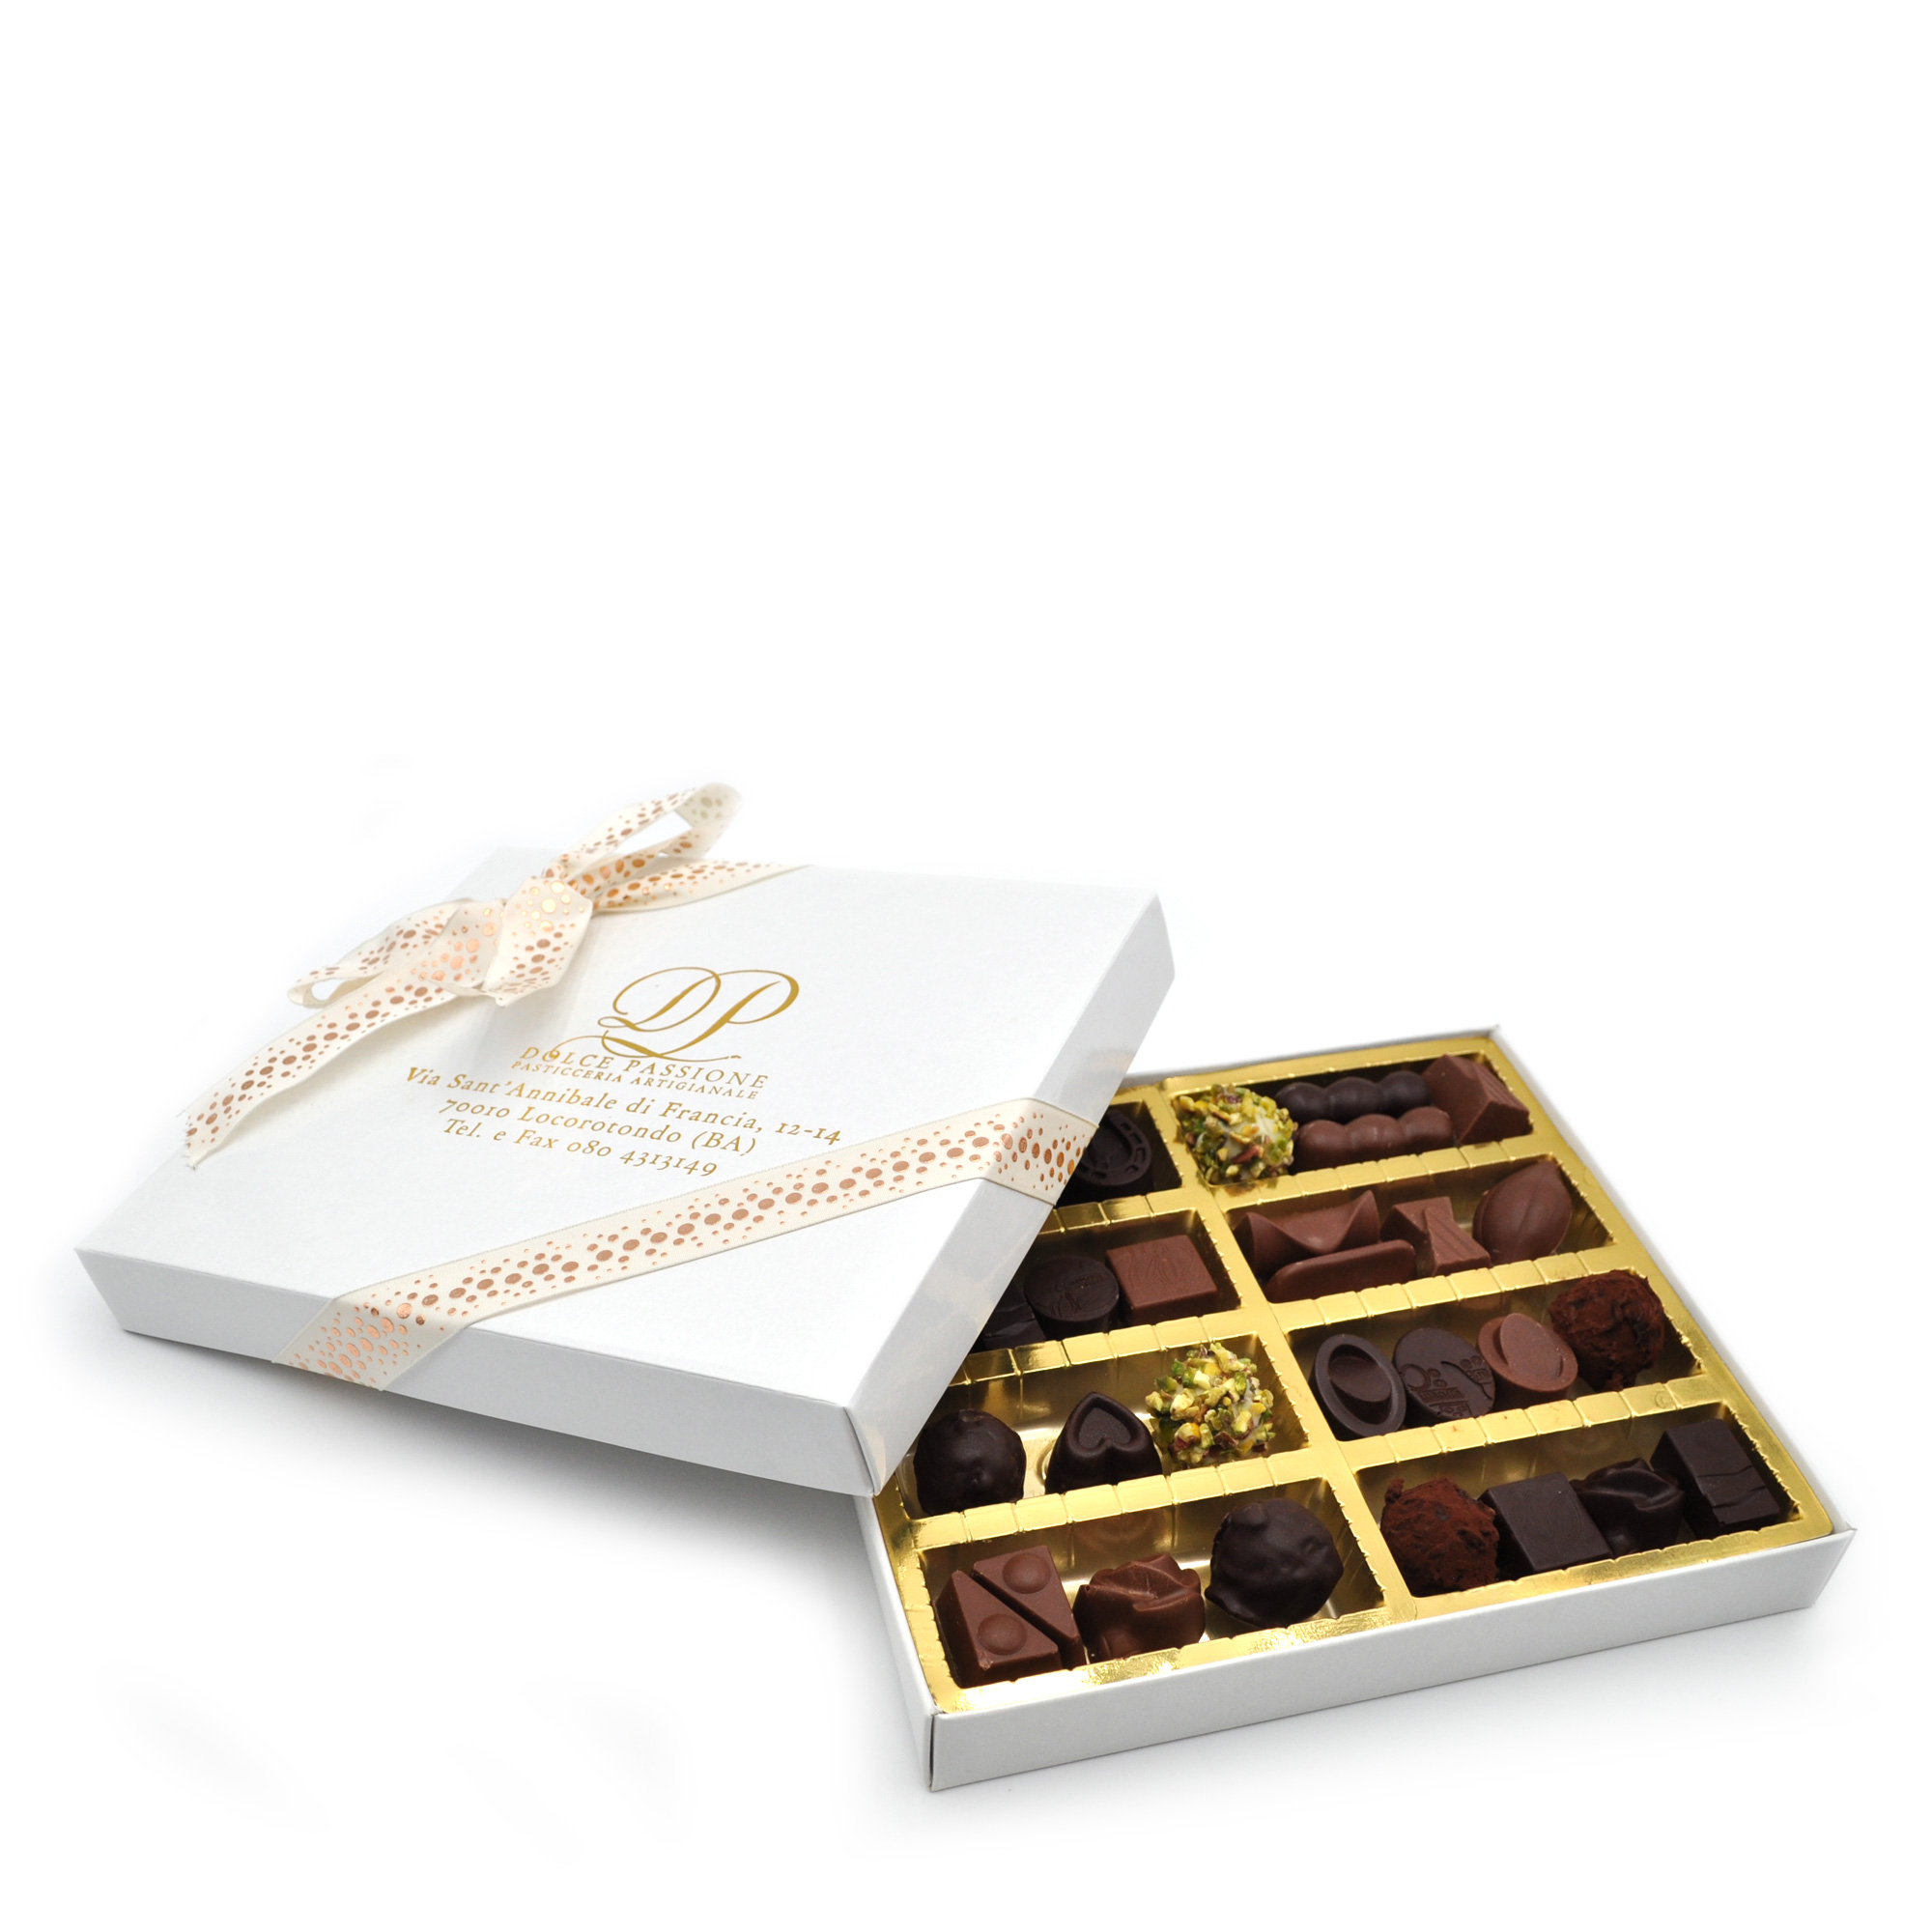 Cioccolatini Artigianali scatola chiara da 24 pz - Dolce Passione  Pasticceria